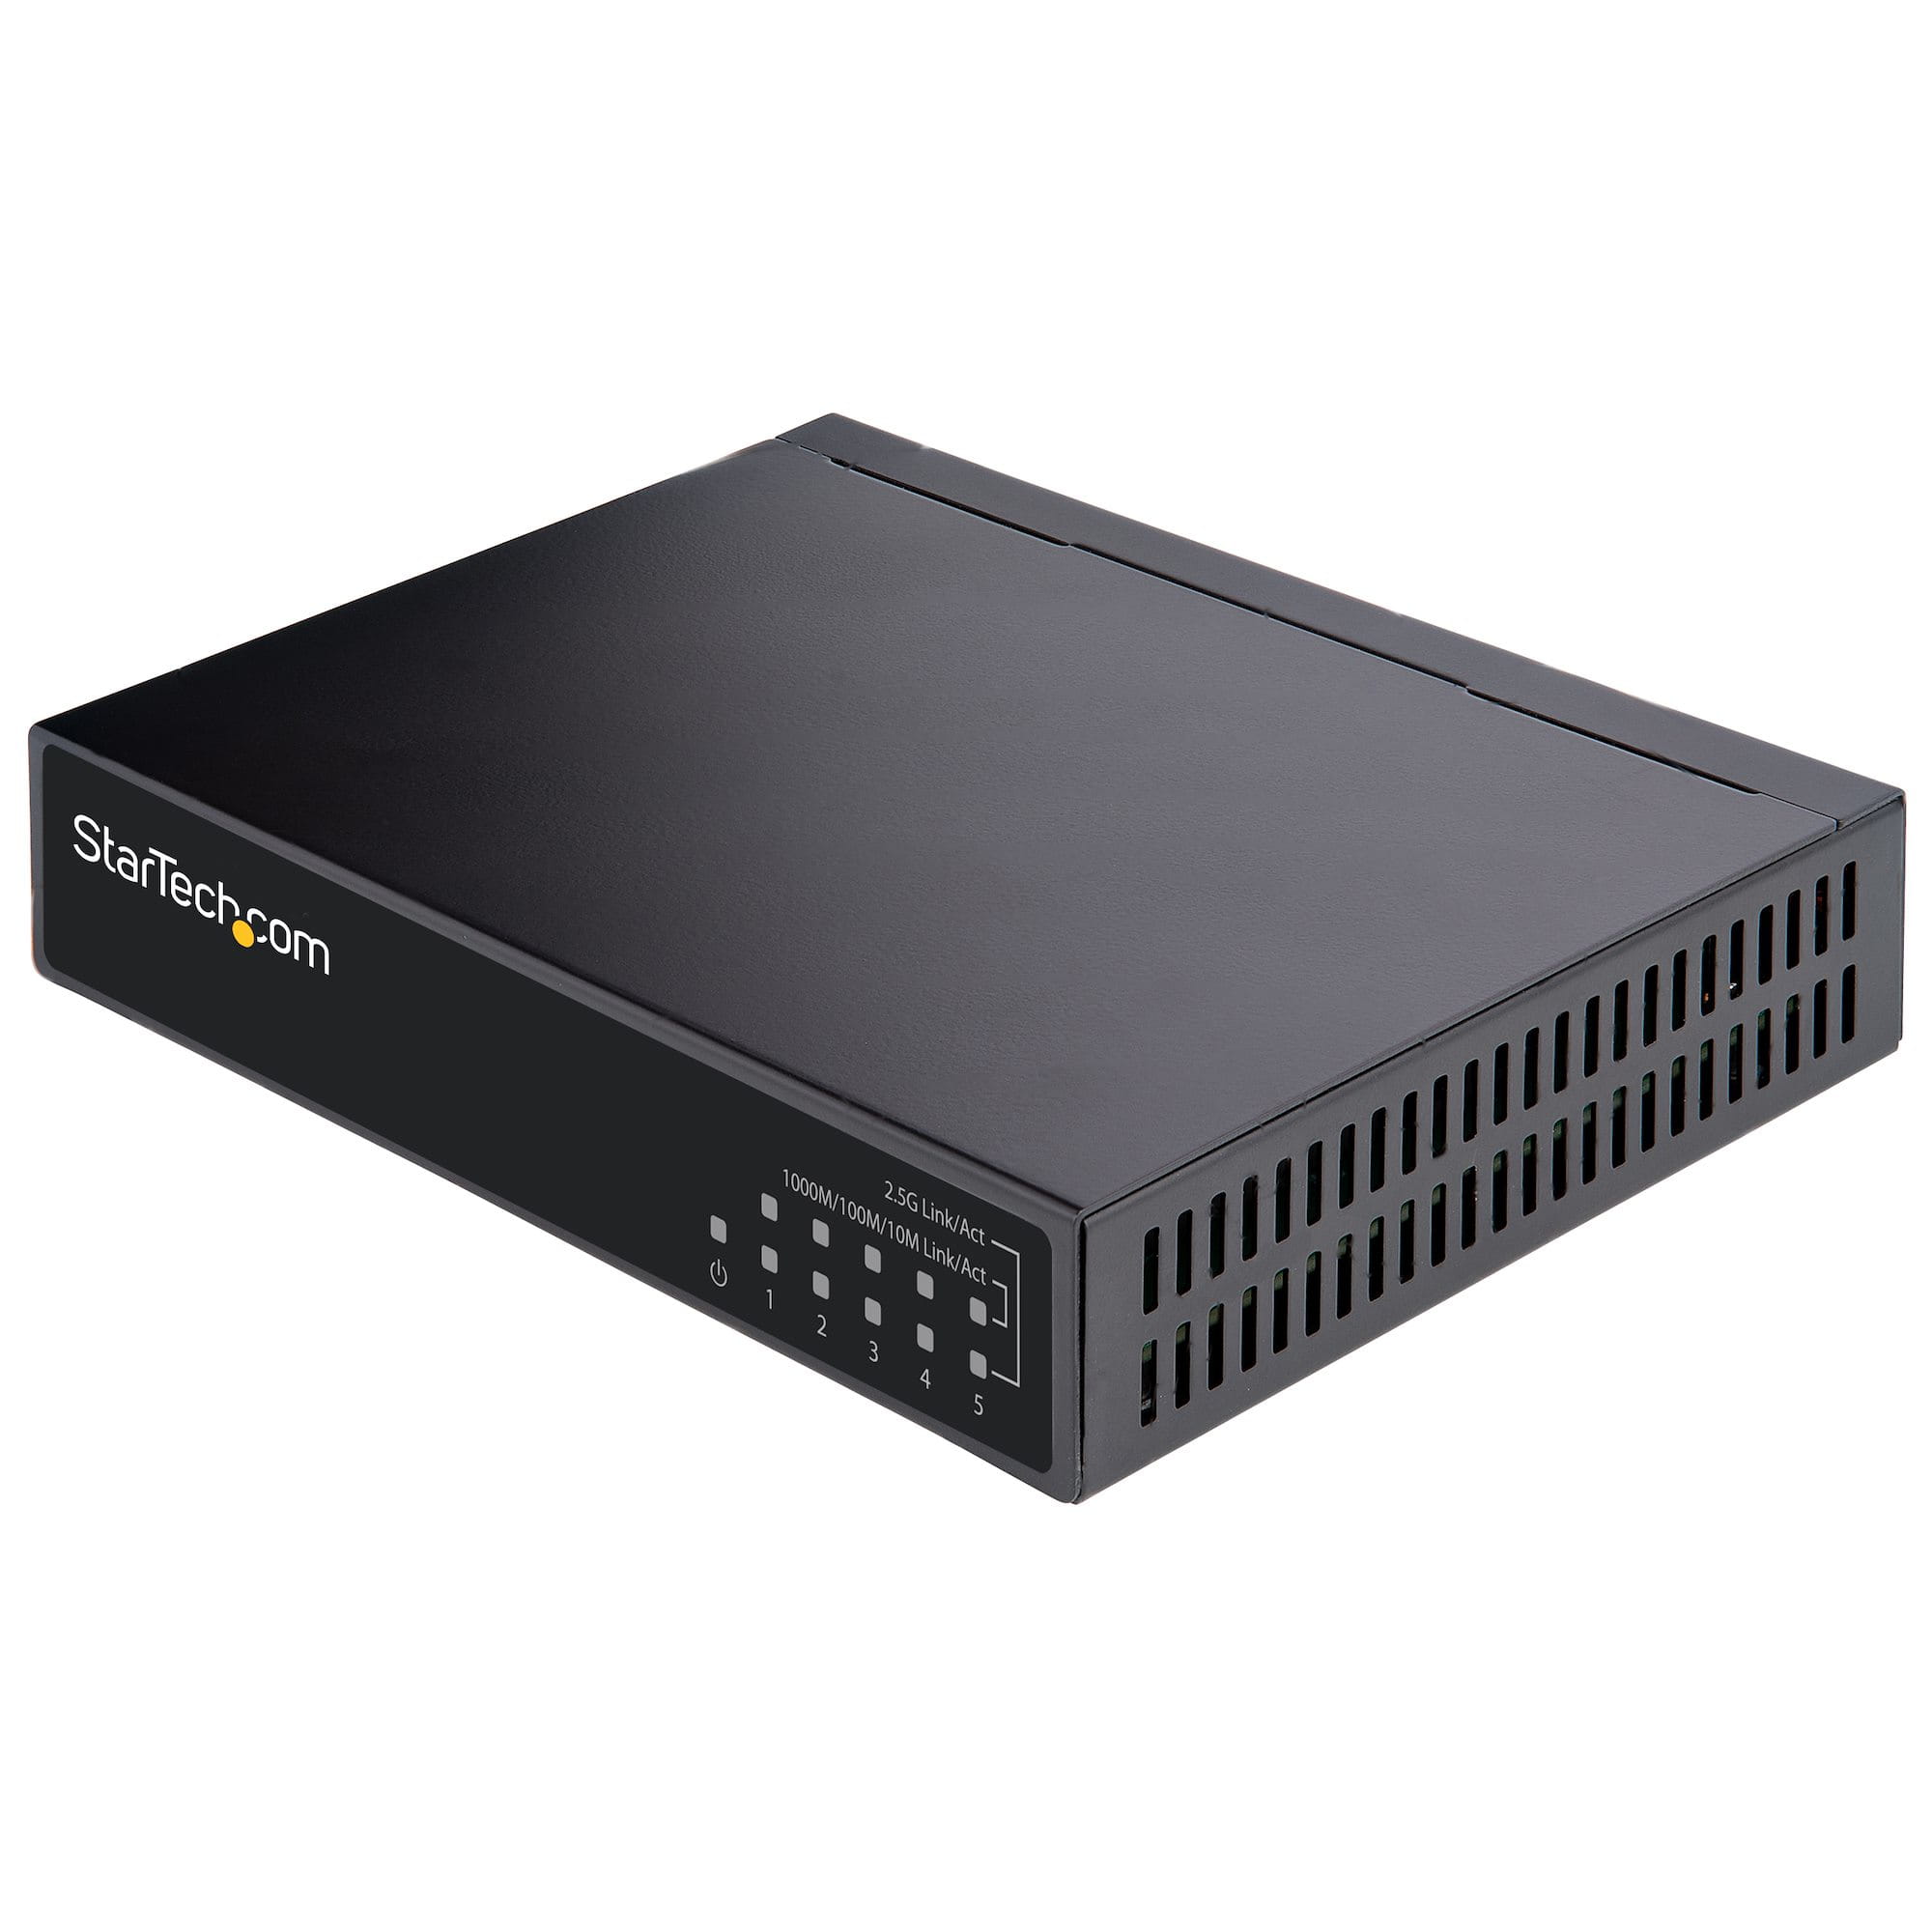 StarTech.com 5 Port Gigabit Switch - Unverwalteter 2.5Gbit/s Switch - Office-/Heimnetzwerk/Lan Switch/Verteiler für Tisch/Wandmontage - Rückwärtskompatibel mit 10/100/1000Mbit/s - Ganzmetall (DS52000)